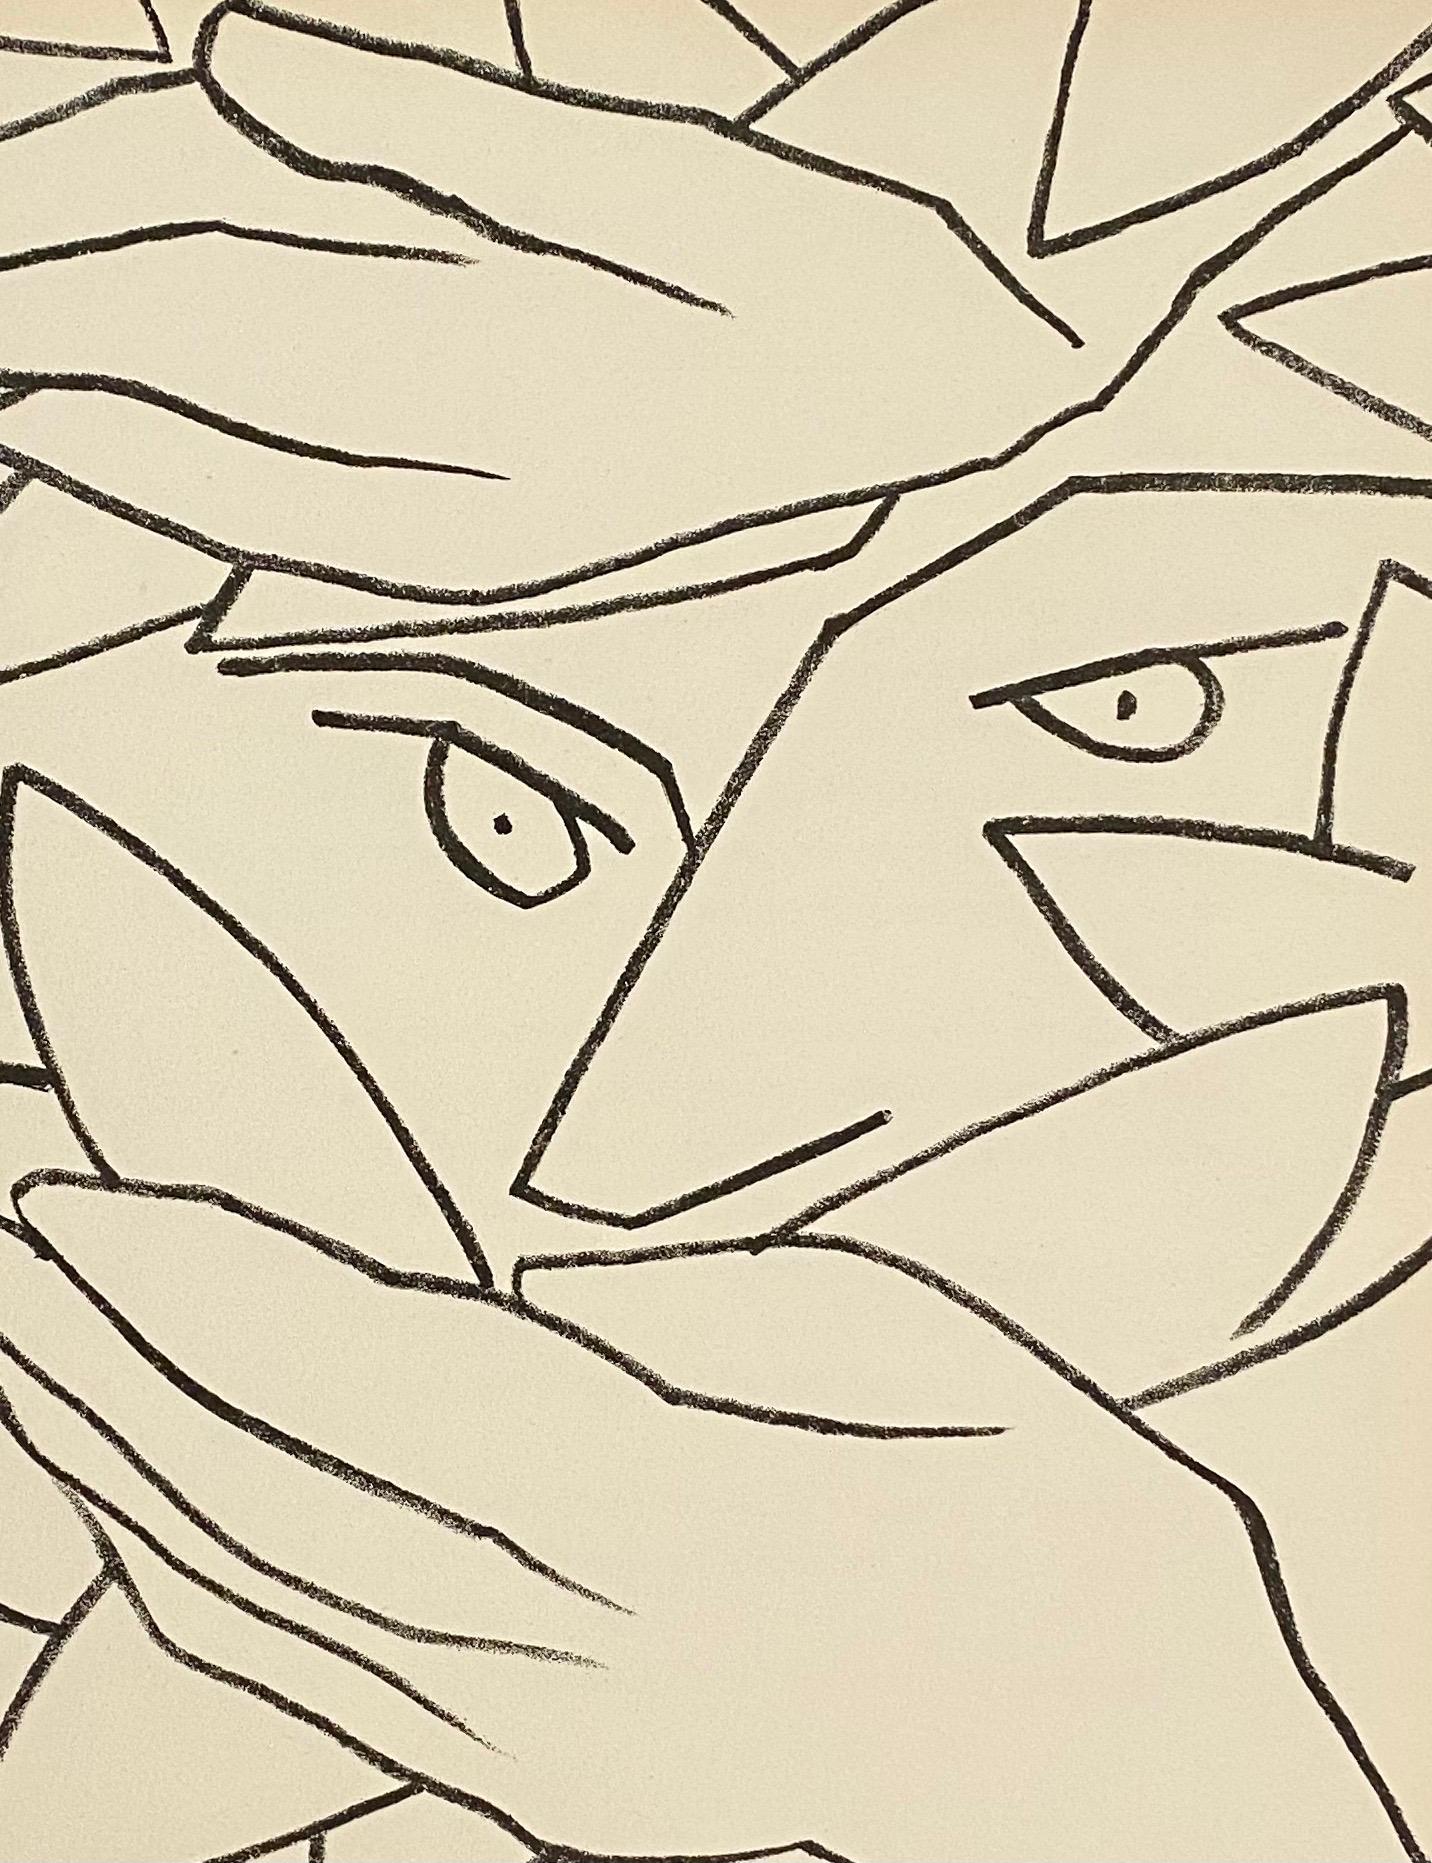 Hiding Head Original French Mourlot Modernist Lithograph, 1950s Francois Gilot - Print by Françoise Gilot